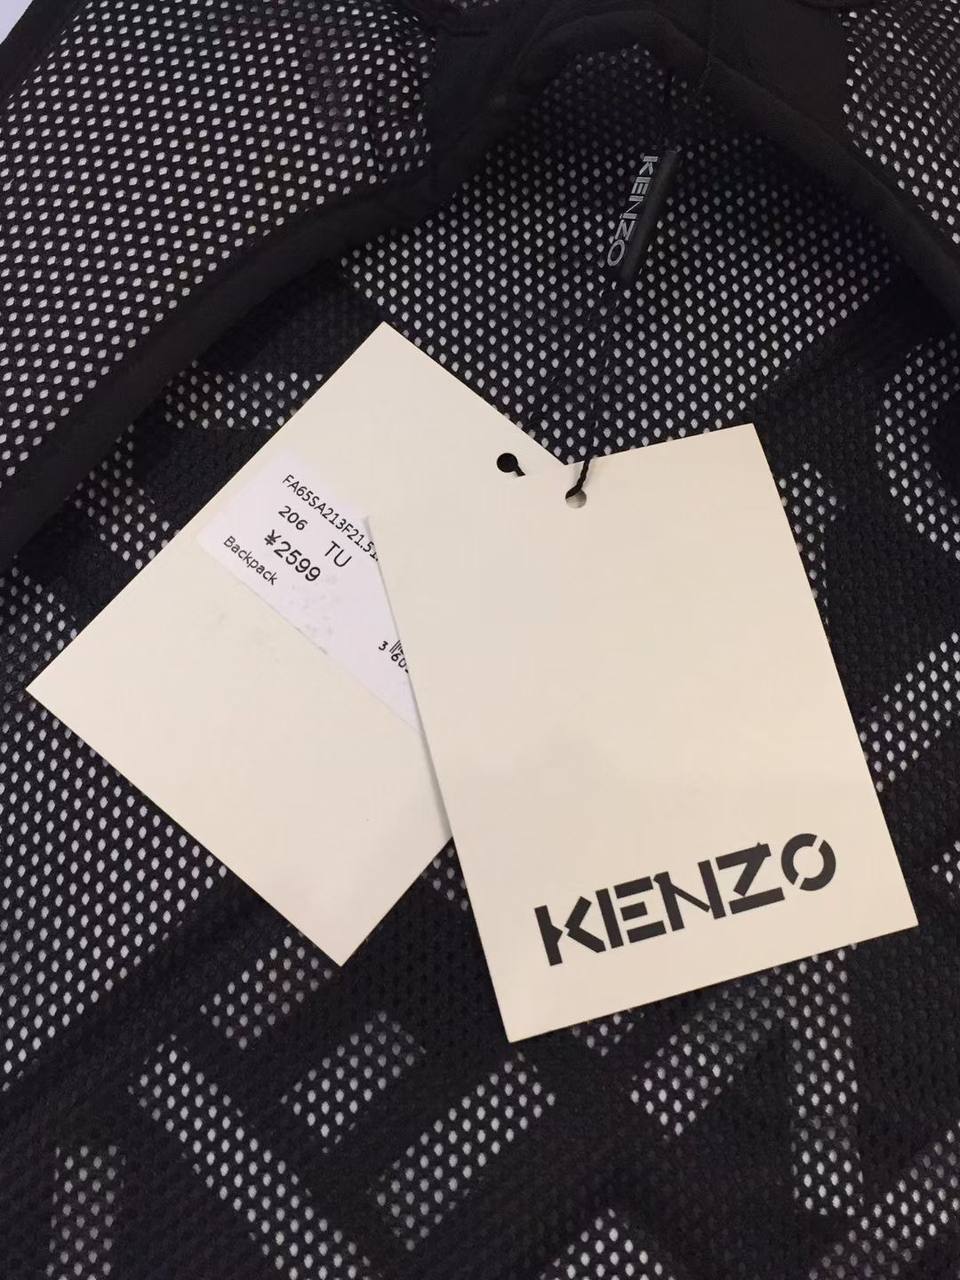 KENZO Black Backpack